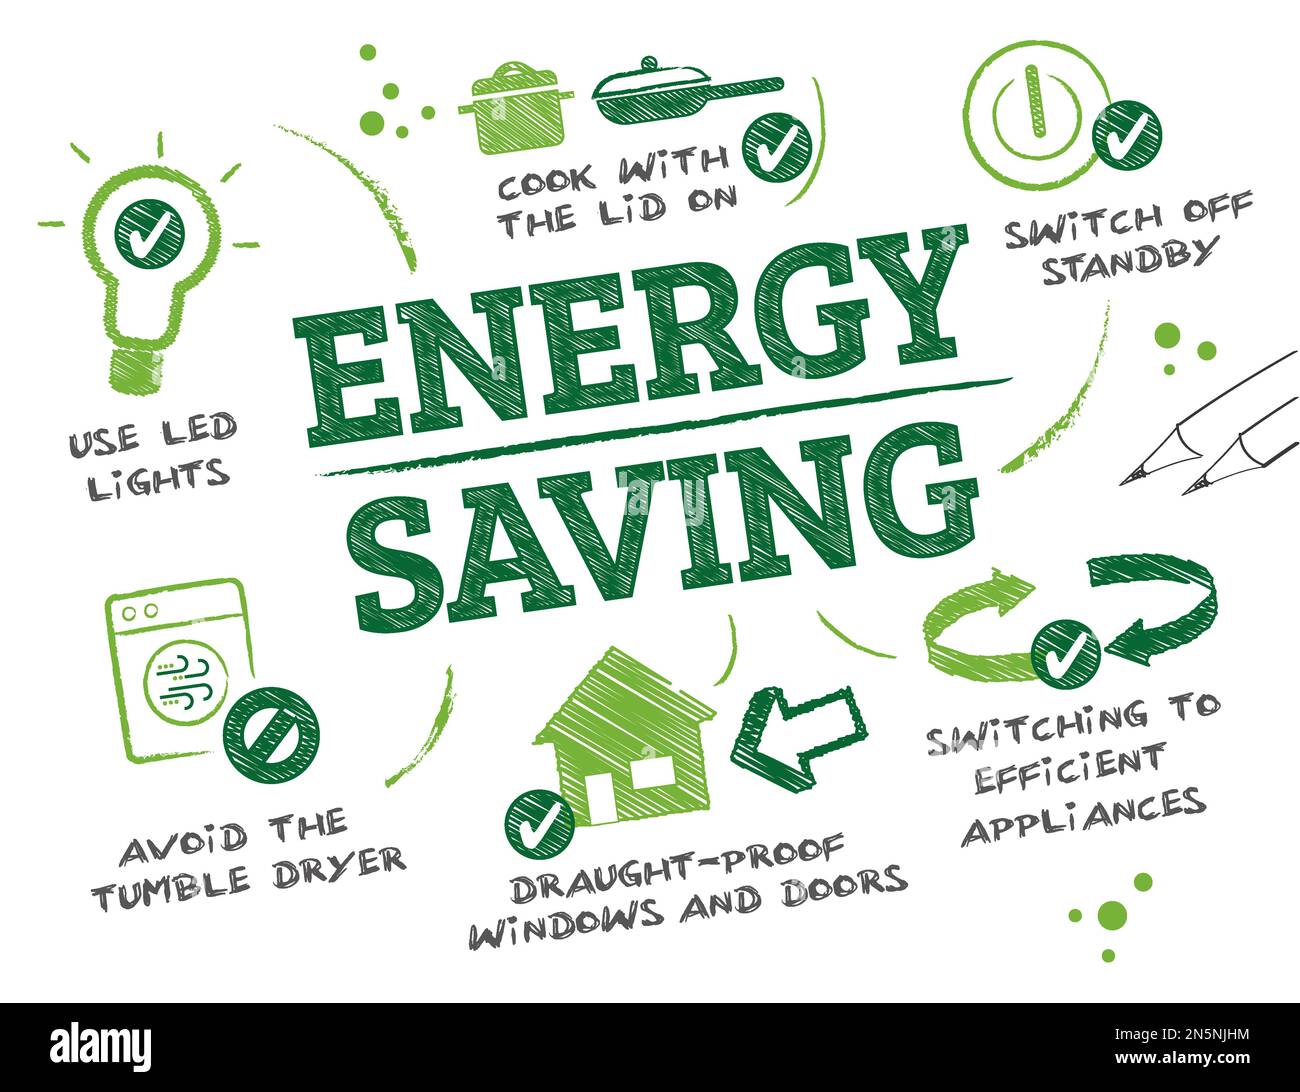 Risparmio di energia Scribble grafico illustrazione vettoriale con icone e parole chiave - Suggerimenti per risparmiare energia e risparmiare sulla bolletta elettrica Foto Stock